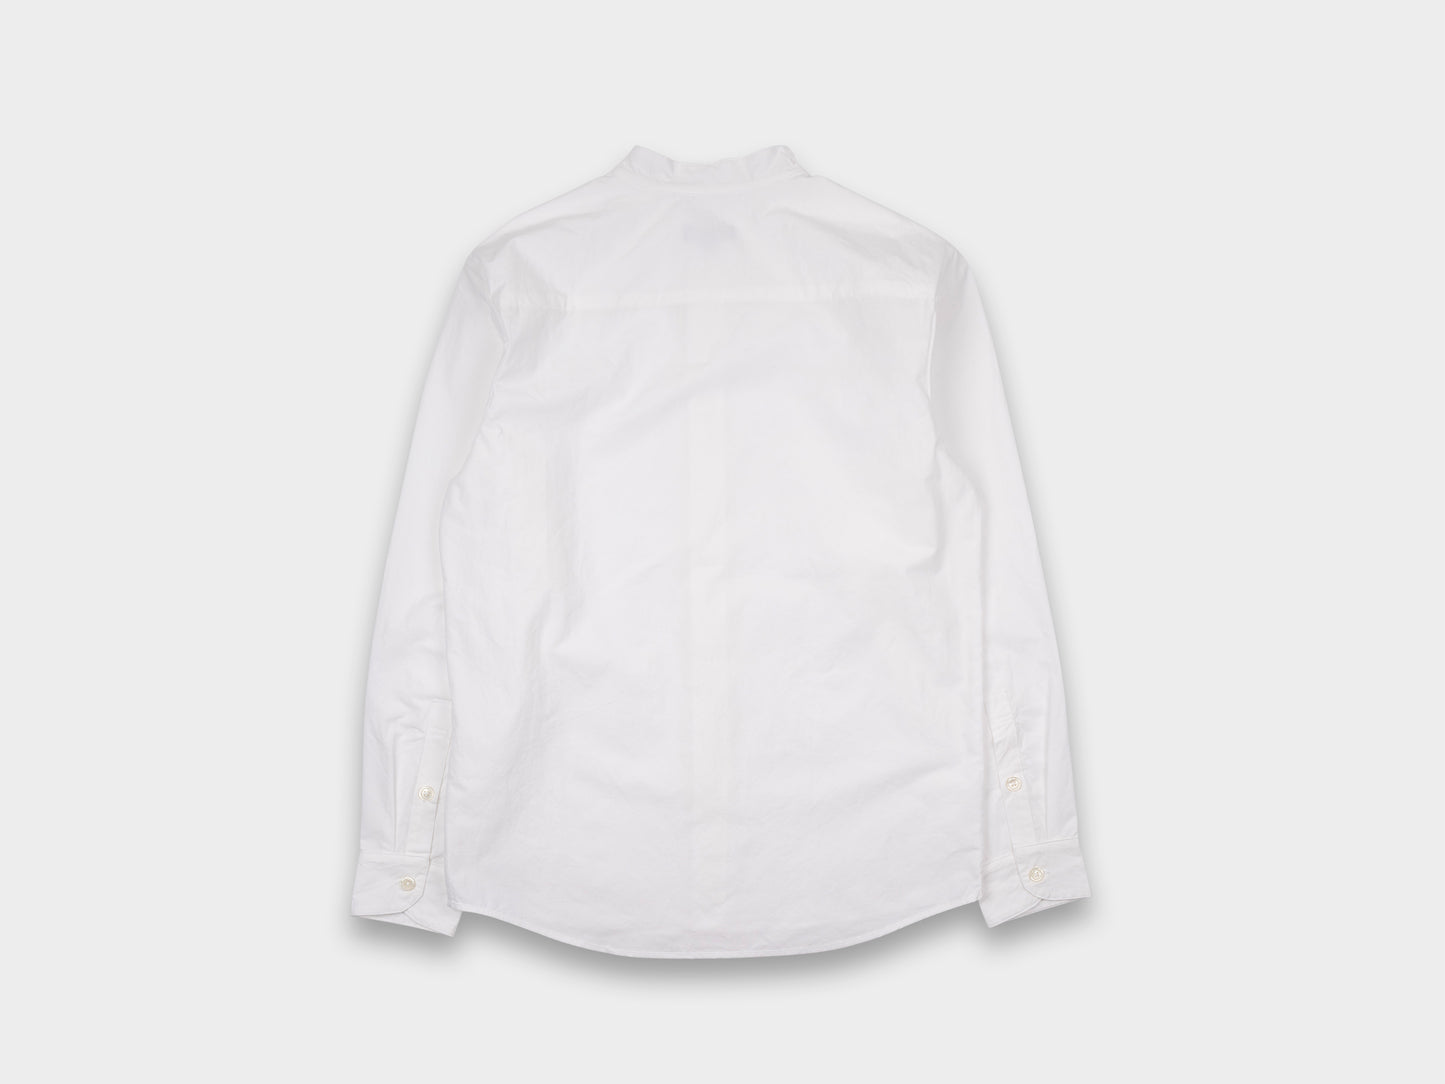 Evan Kinori Band Collar Shirt Typewriter White